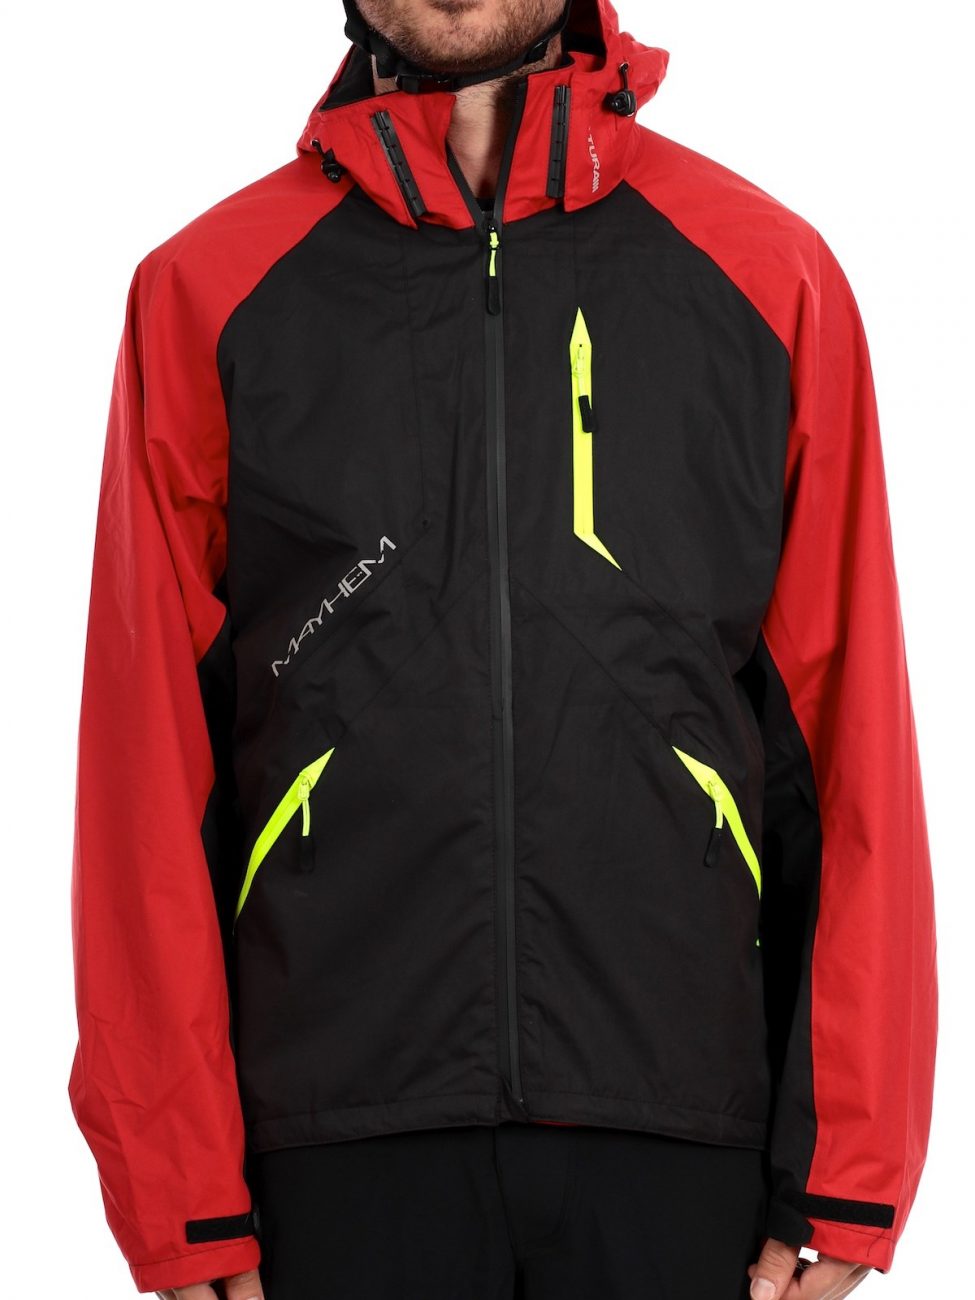 altura-red-black-mayhem-mtb-jacket-0-2b46a-xl